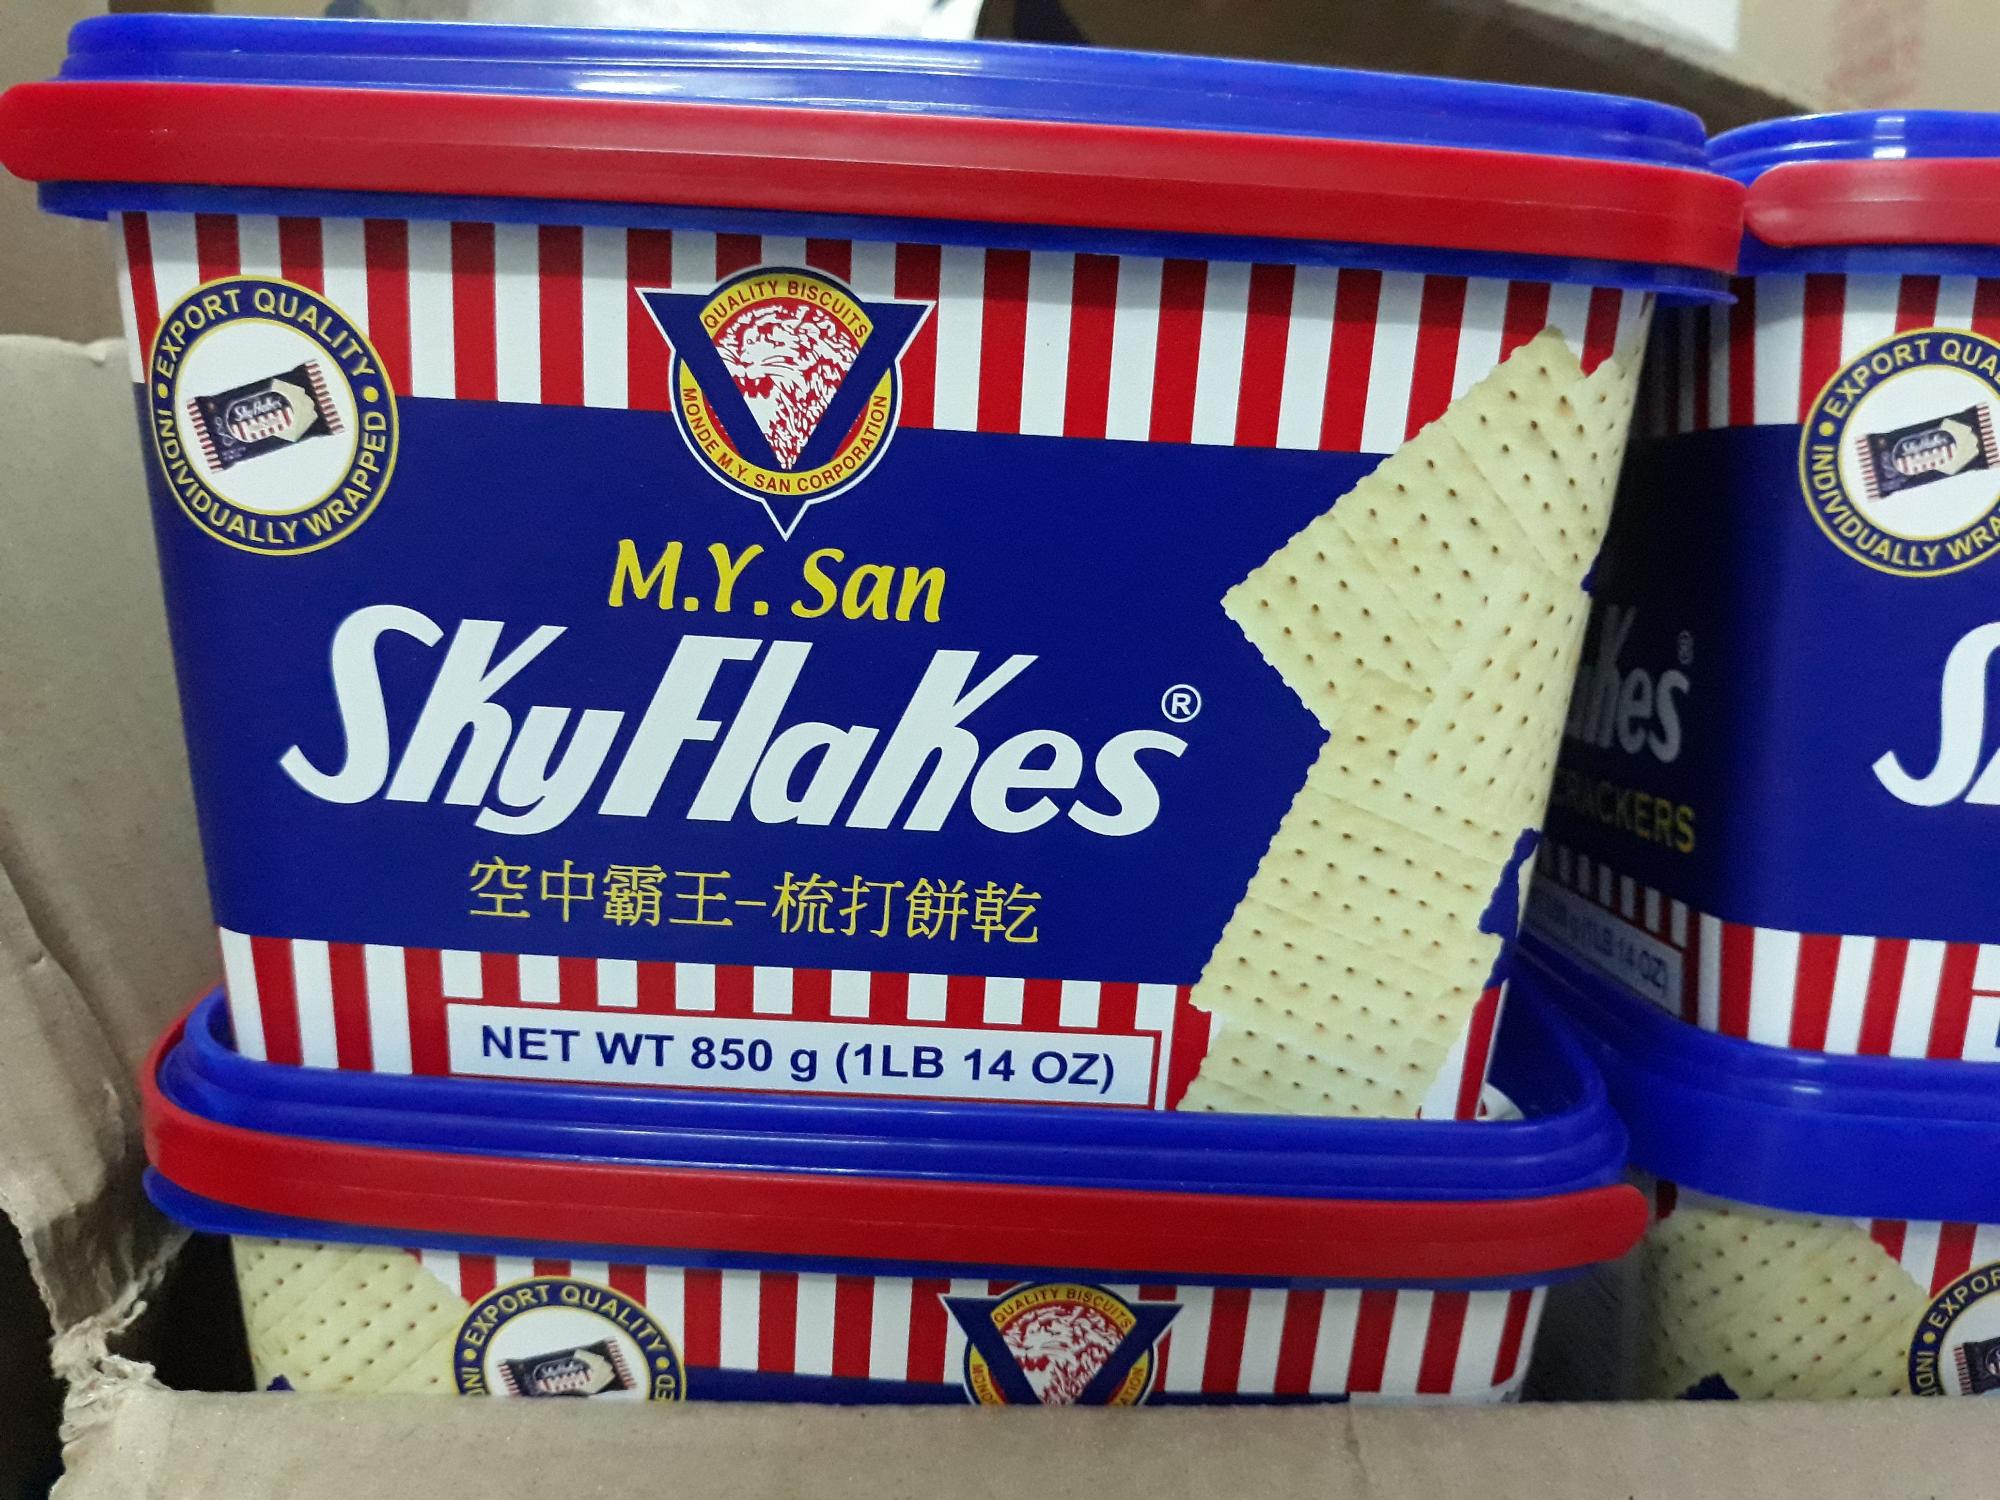 Bánh lạt skyflakes 850g dành cho người tiểu đường